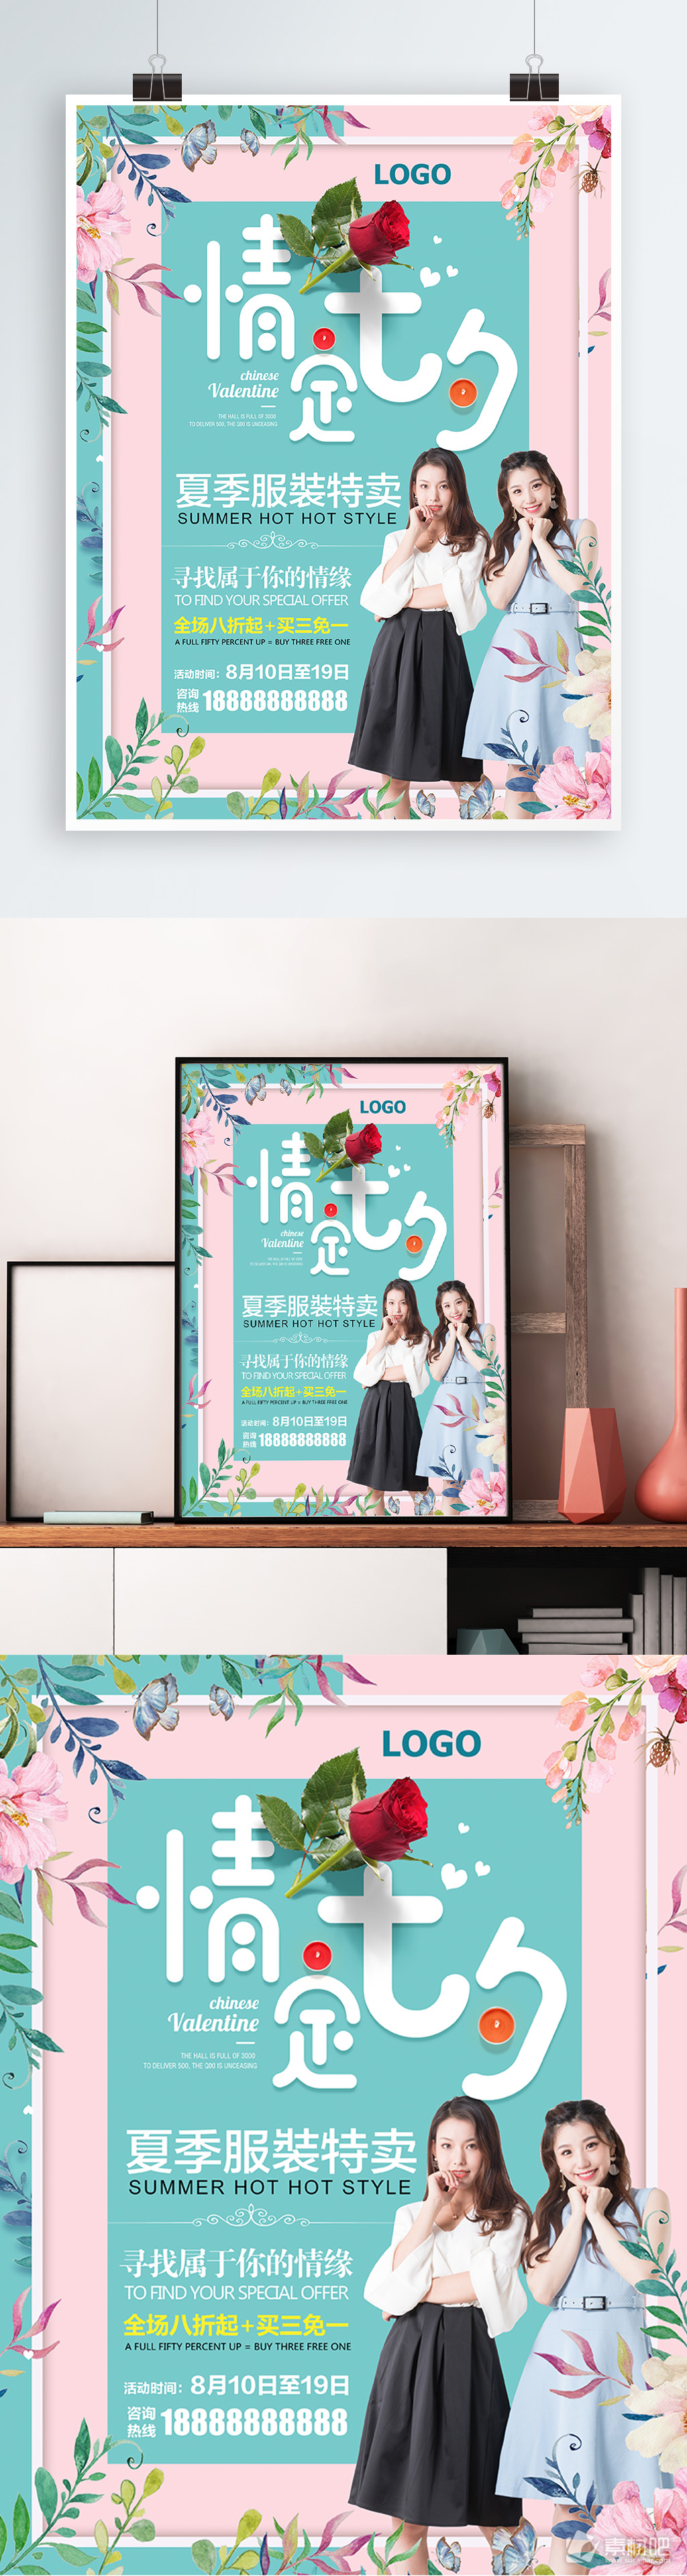 七夕情人节夏季女装特卖会宣传海报